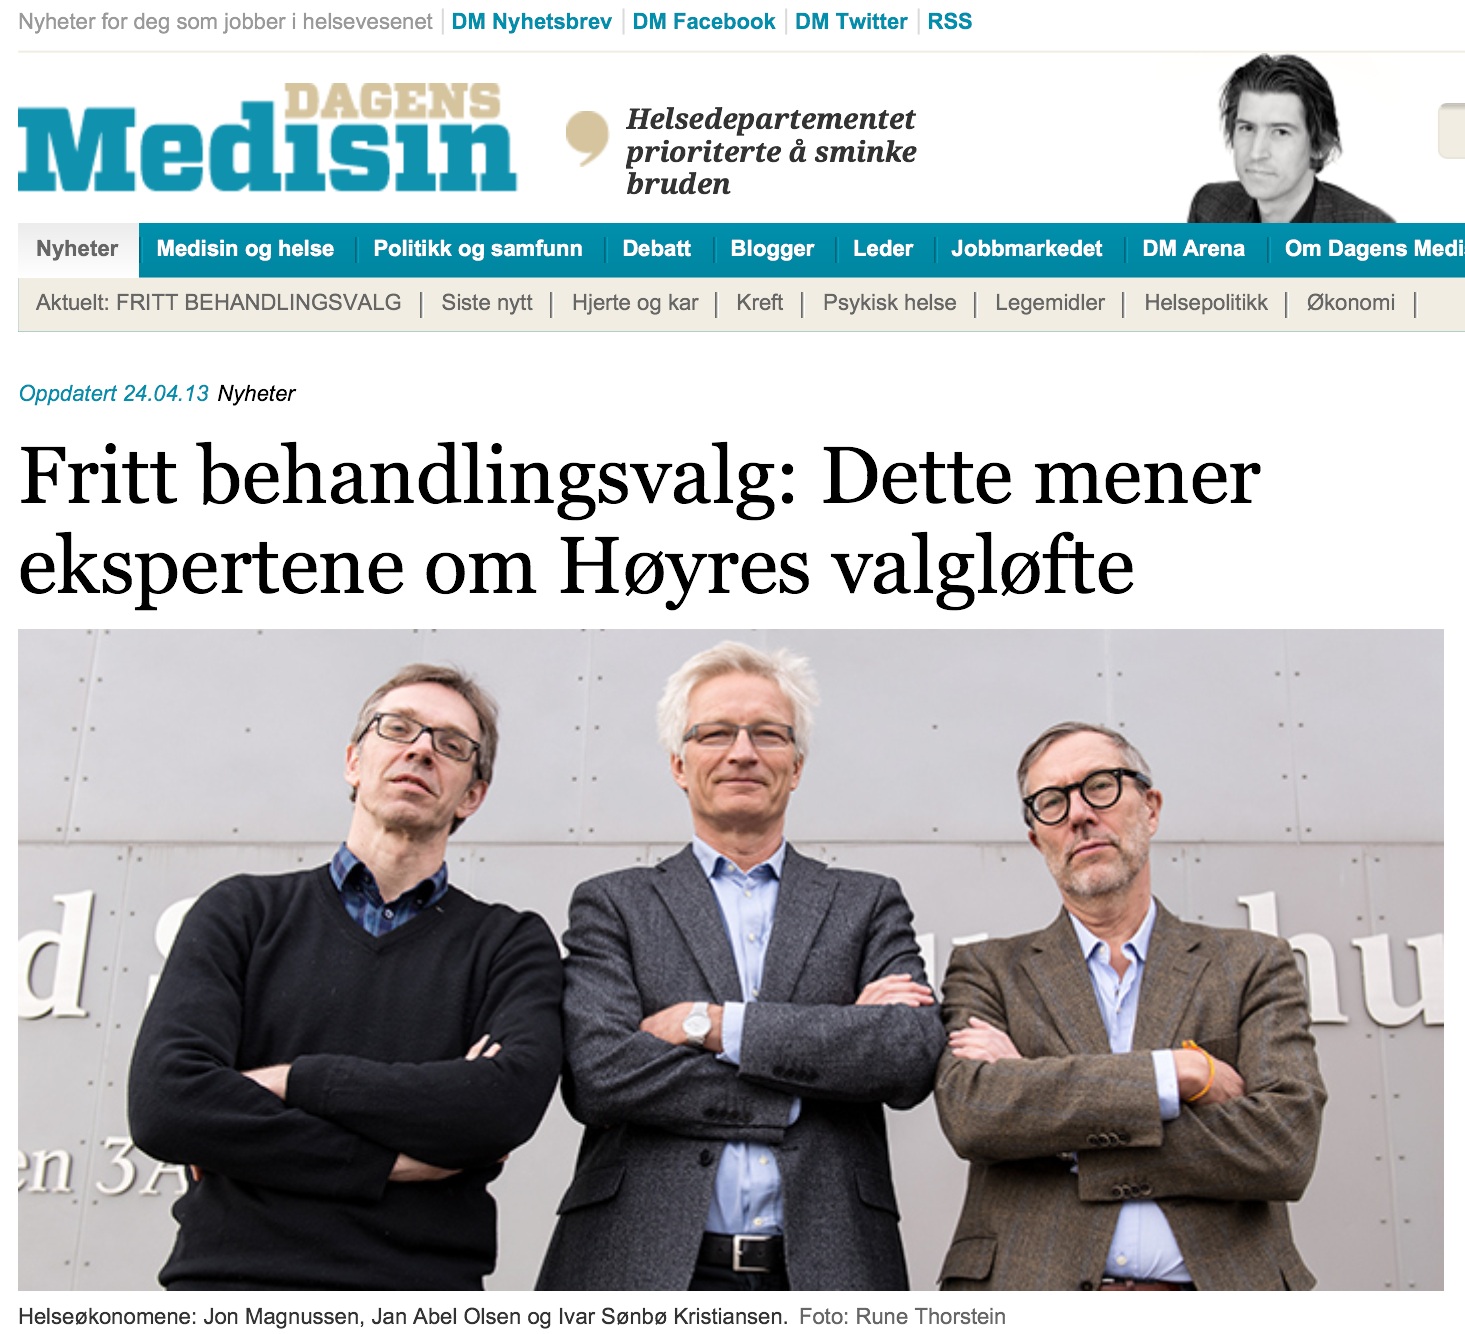 Faksimile fra Dagens Medisin 24.04.13. Helseøkonomene: Jon Magnussen, Jan Abel Olsen og Ivar Sønbø Kristiansen.